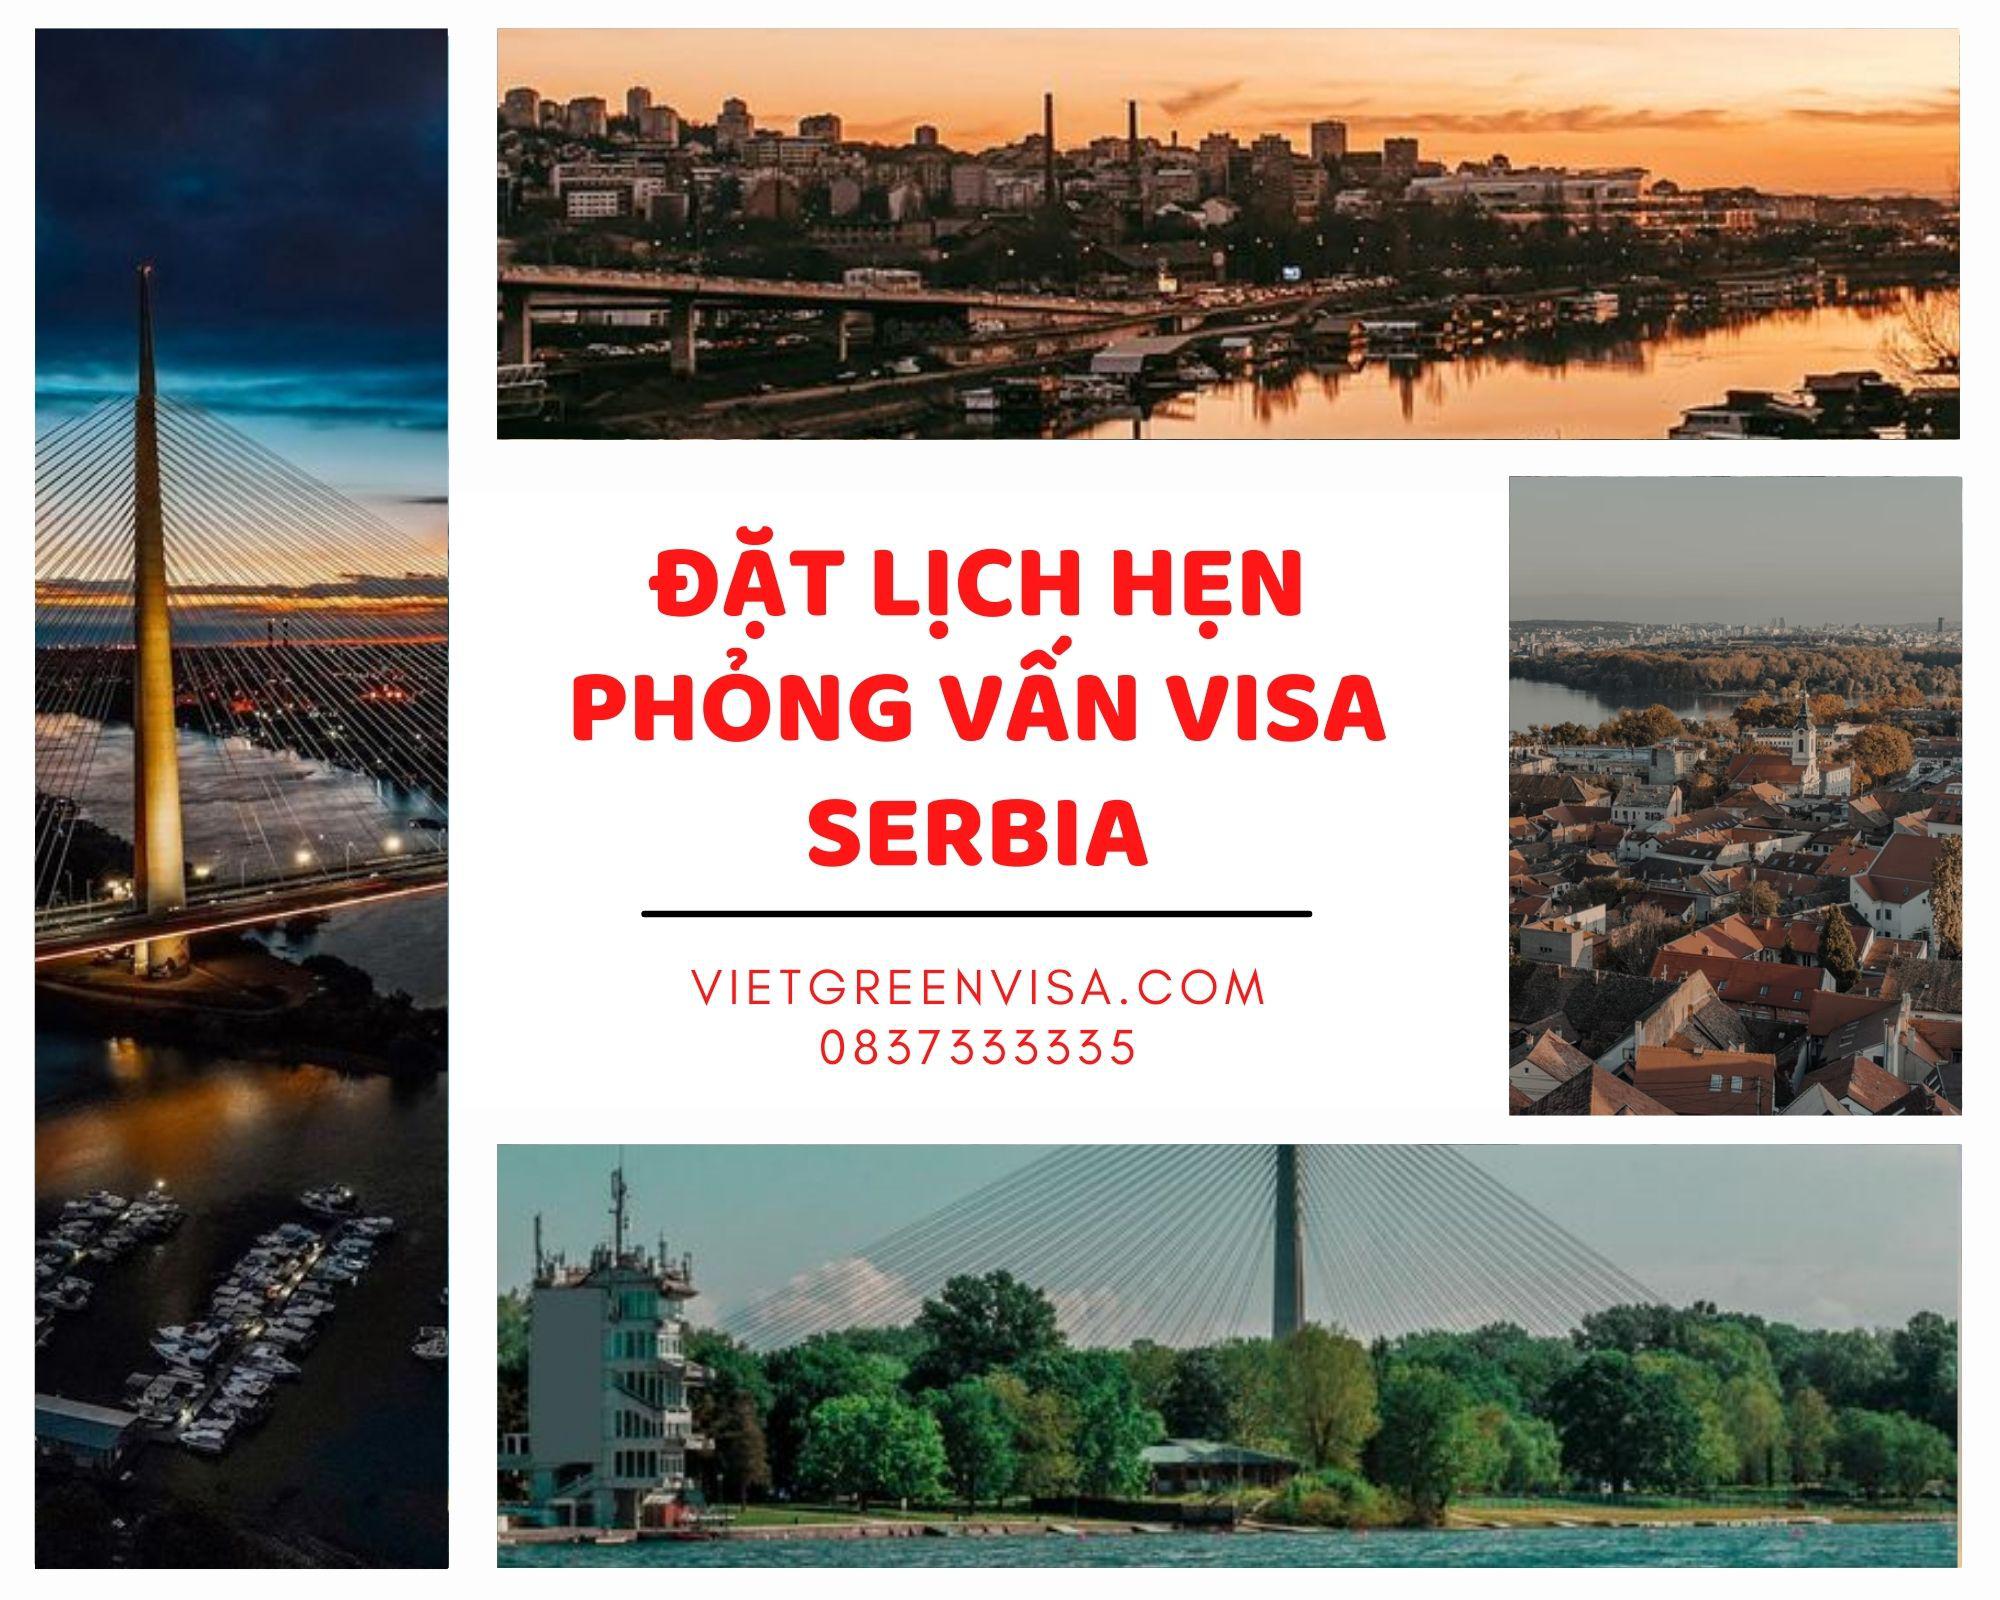 Dịch vụ đặt lịch hẹn phỏng vấn visa Serbia